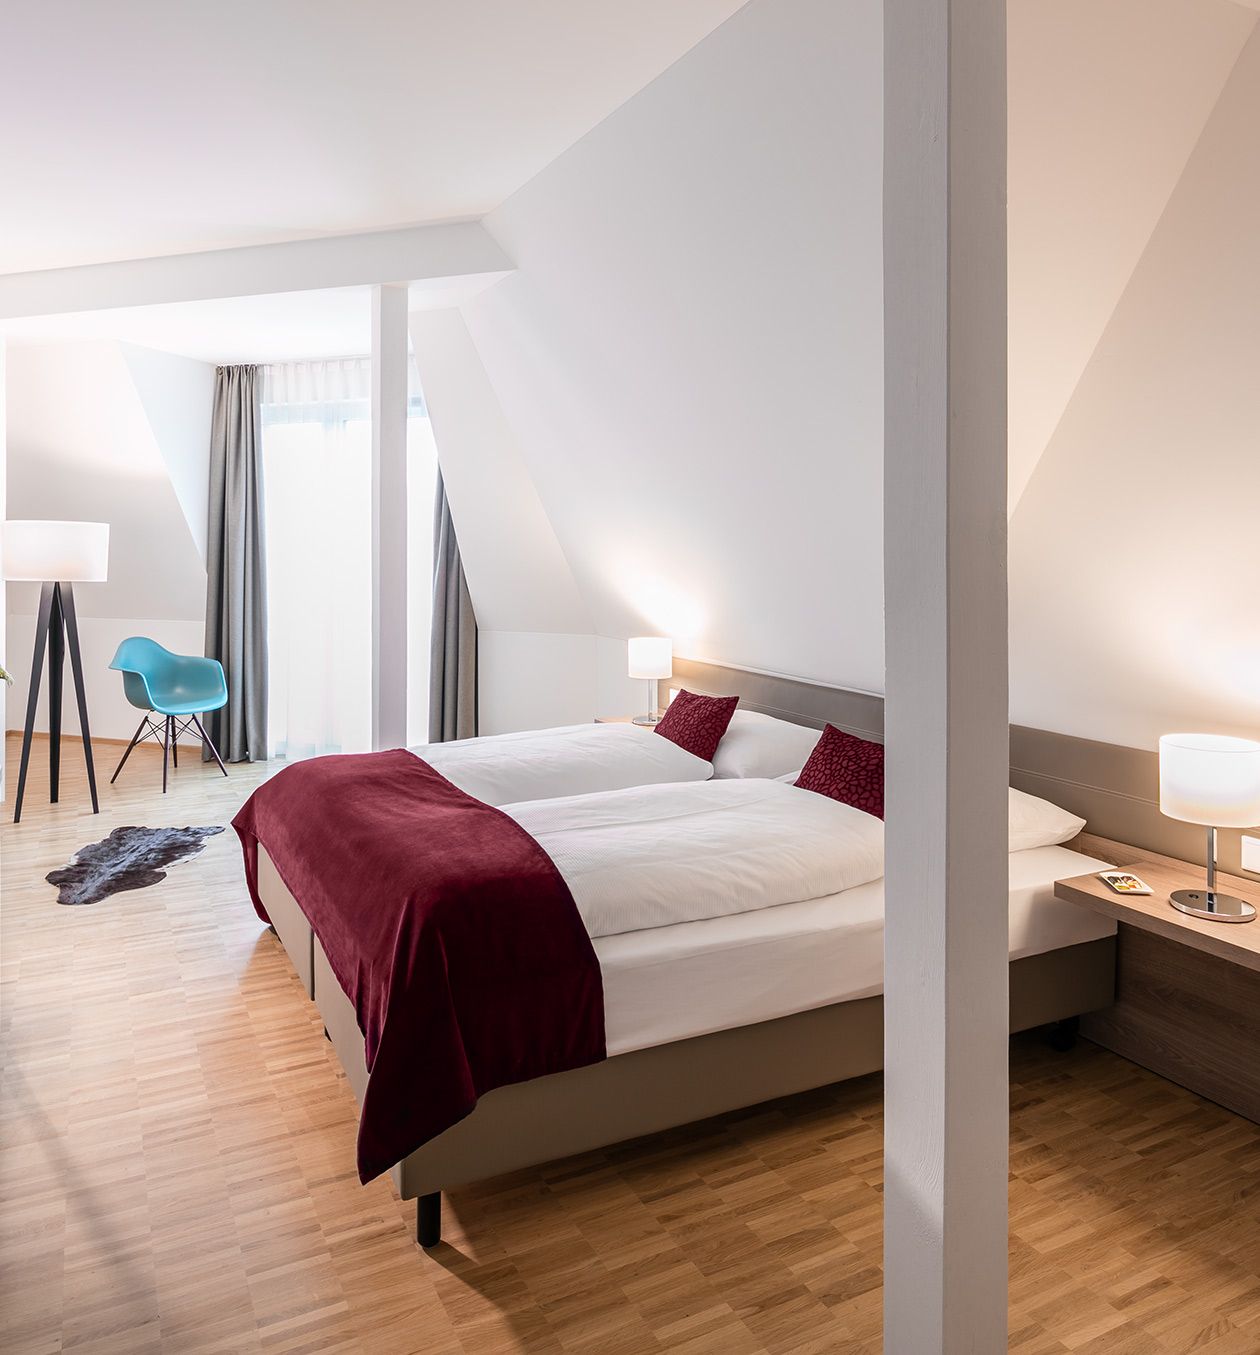 Helles und modernes Hotelzimmer im Hotel Trezor in Singen am Hohentwiel - Generalsanierung durch APPIA Contract GmbH